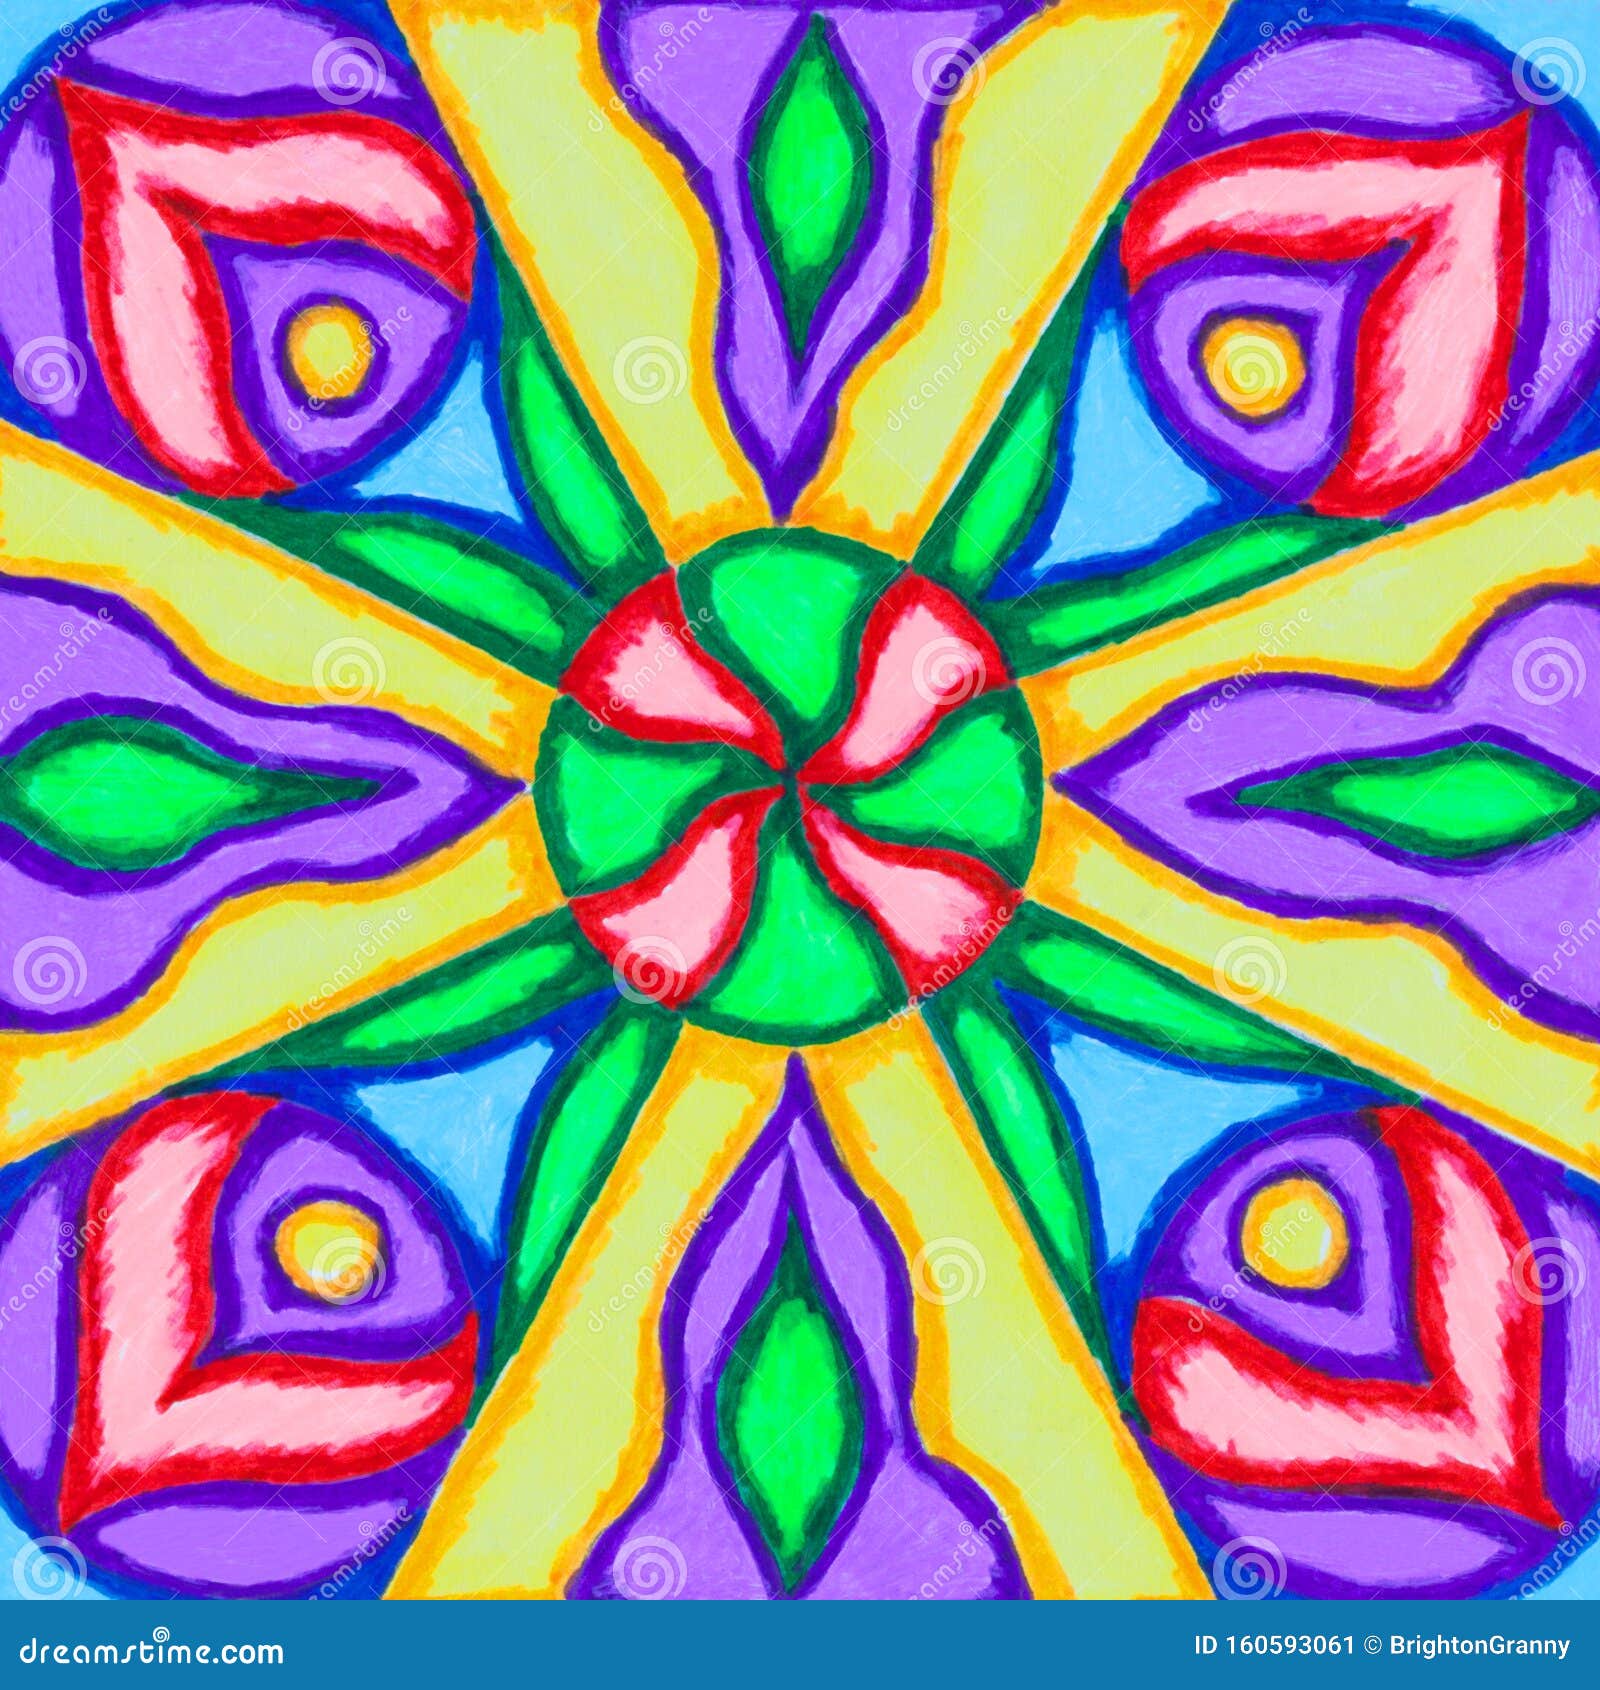 Dibujo a Mano De Los Círculos, Curvas Y Líneas De La Pluma Del Marcador  Colorido Abstracto Imagen de archivo - Imagen de extracto, floral: 160593061